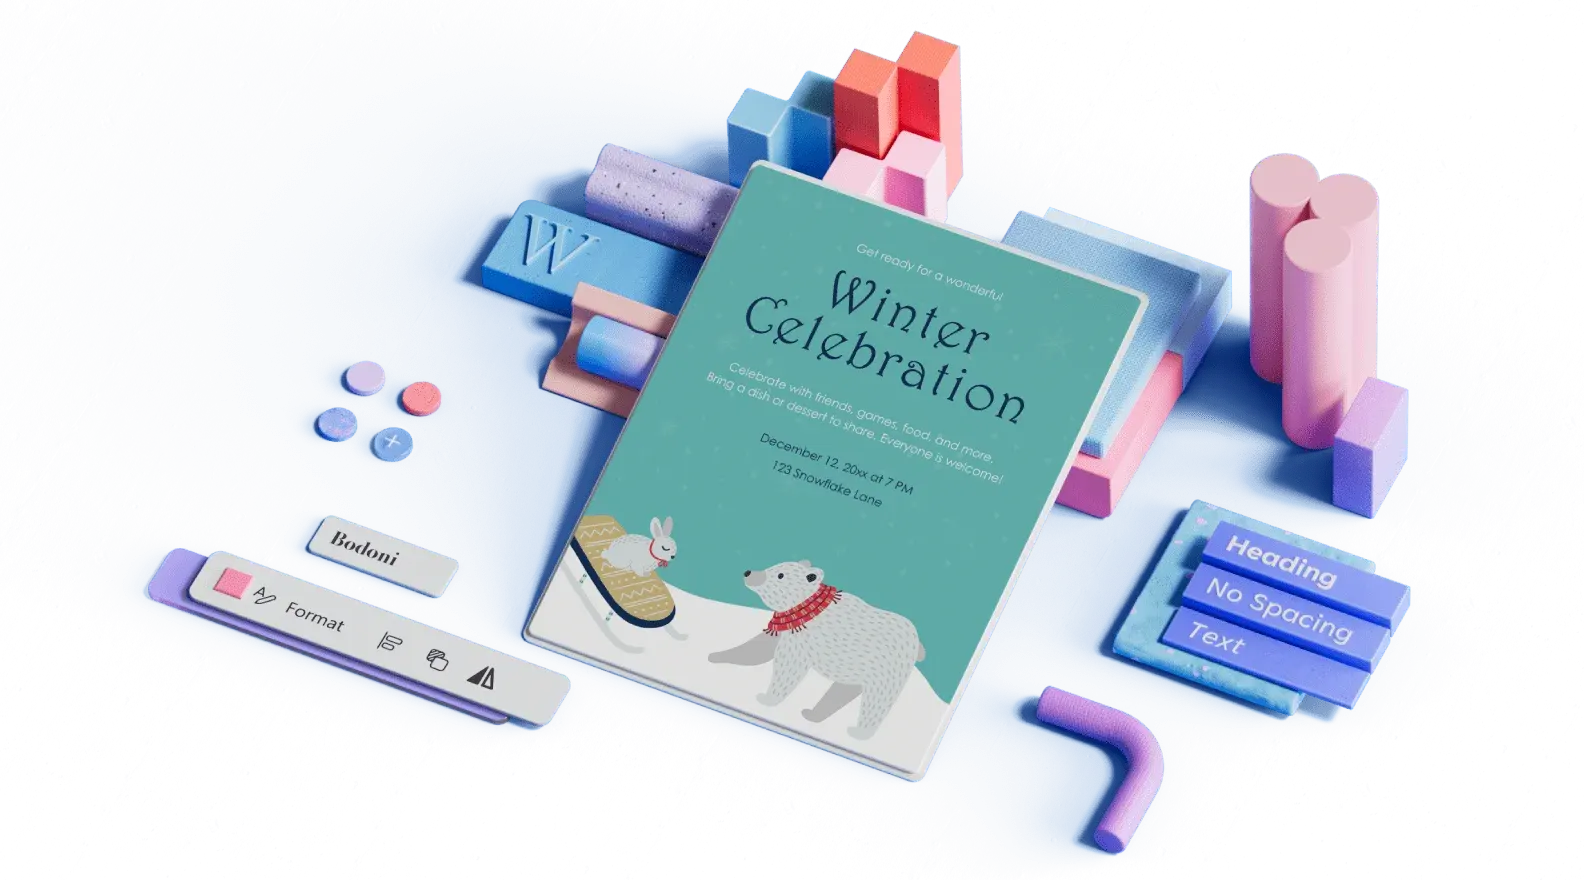 Predloga napovedi za zimsko praznovanje, obkrožena s 3D-ilustriranimi elementi načrta